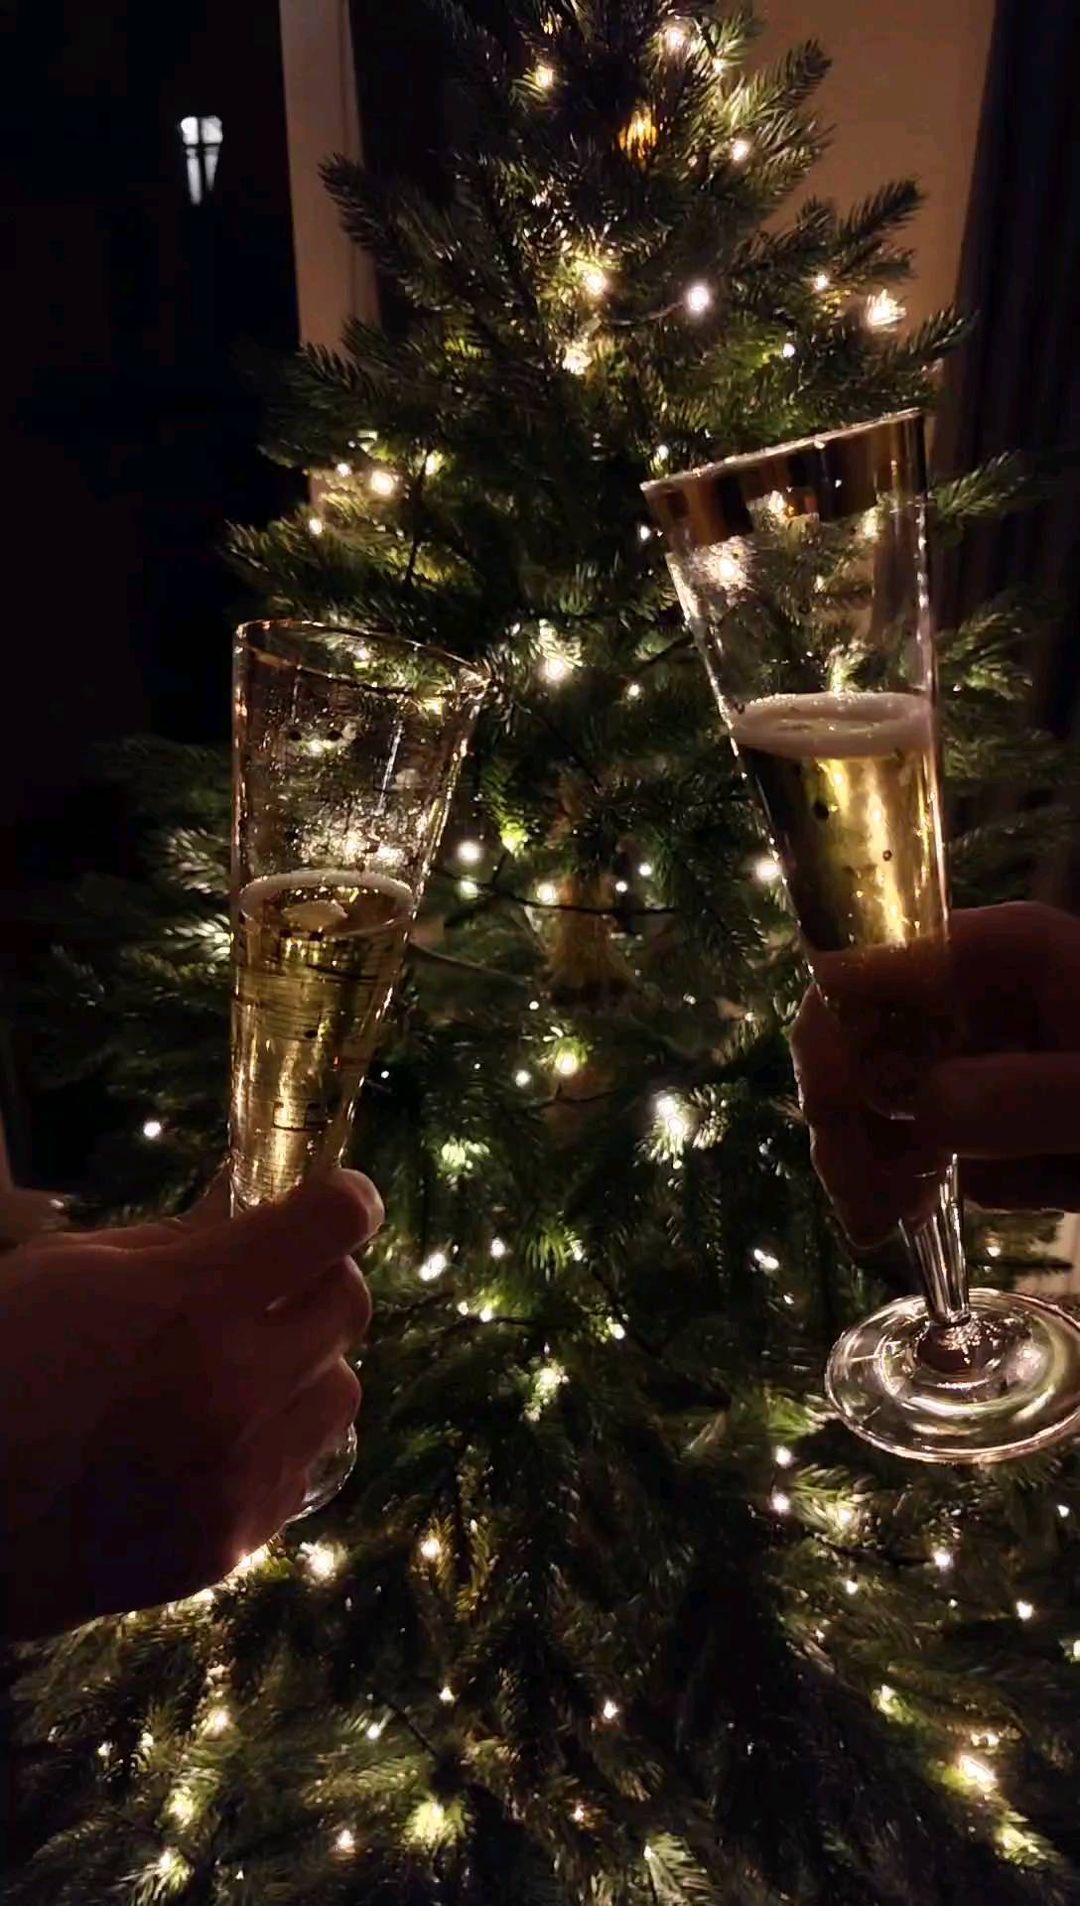 Wir wünschen Euch und Euren Lieben ein frohes neues Jahr und alles Gute für 2022! 🎉🎊🥂#happynewyear #nye #2022